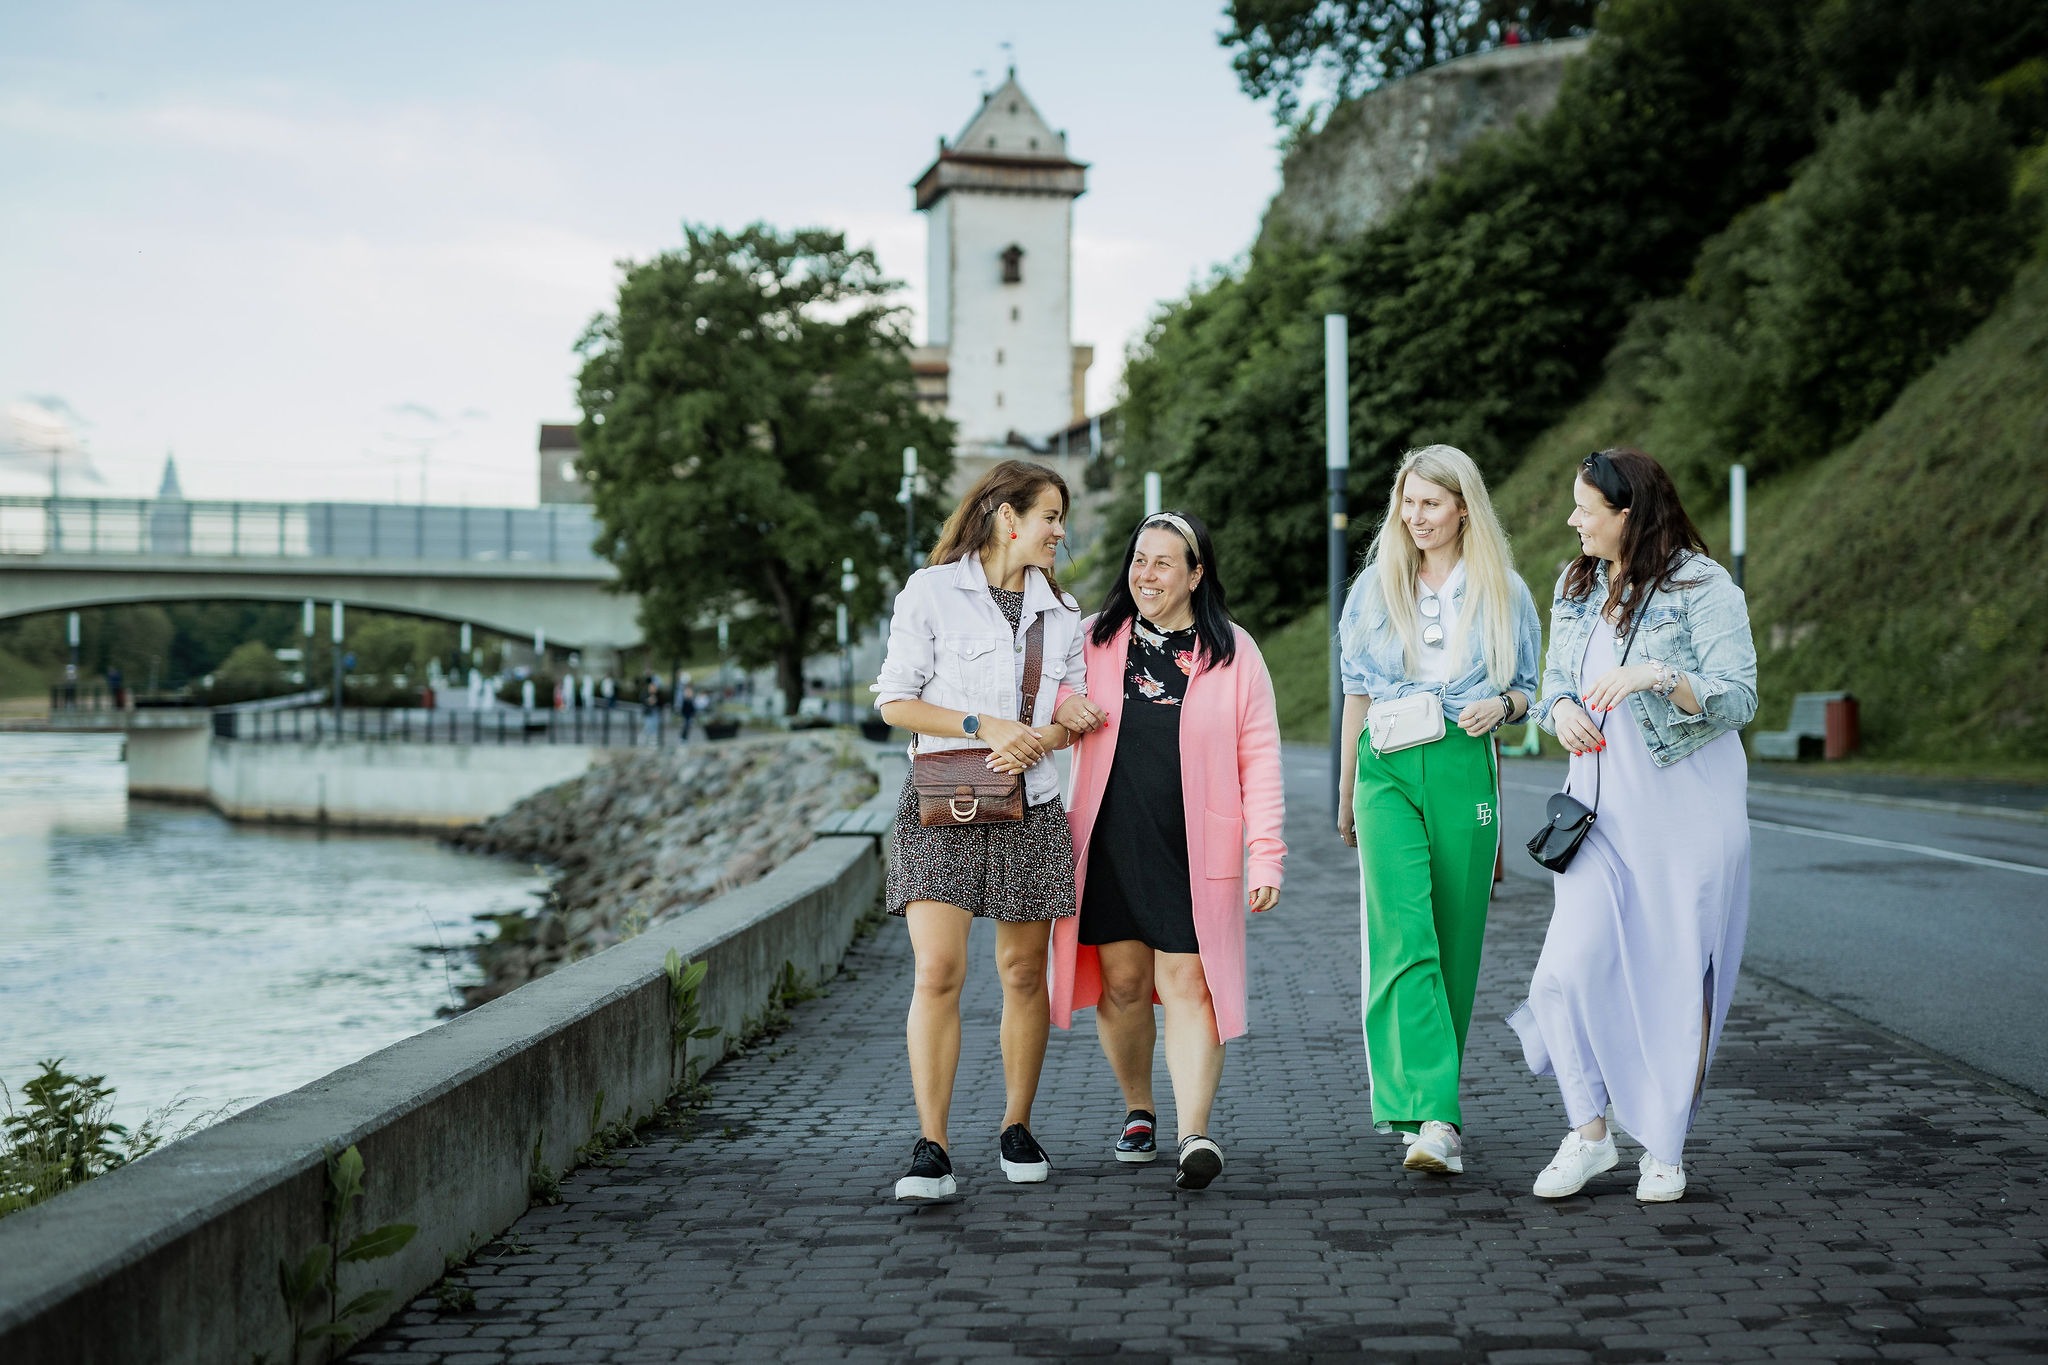 Rohkem kui 700 aasta vanune Narva Hermanni linnus on piirilinna võimas turismiatraktsioon, mis on hea näide nüüdisaegsest muuseumist, kus ühendatakse vana ja uu